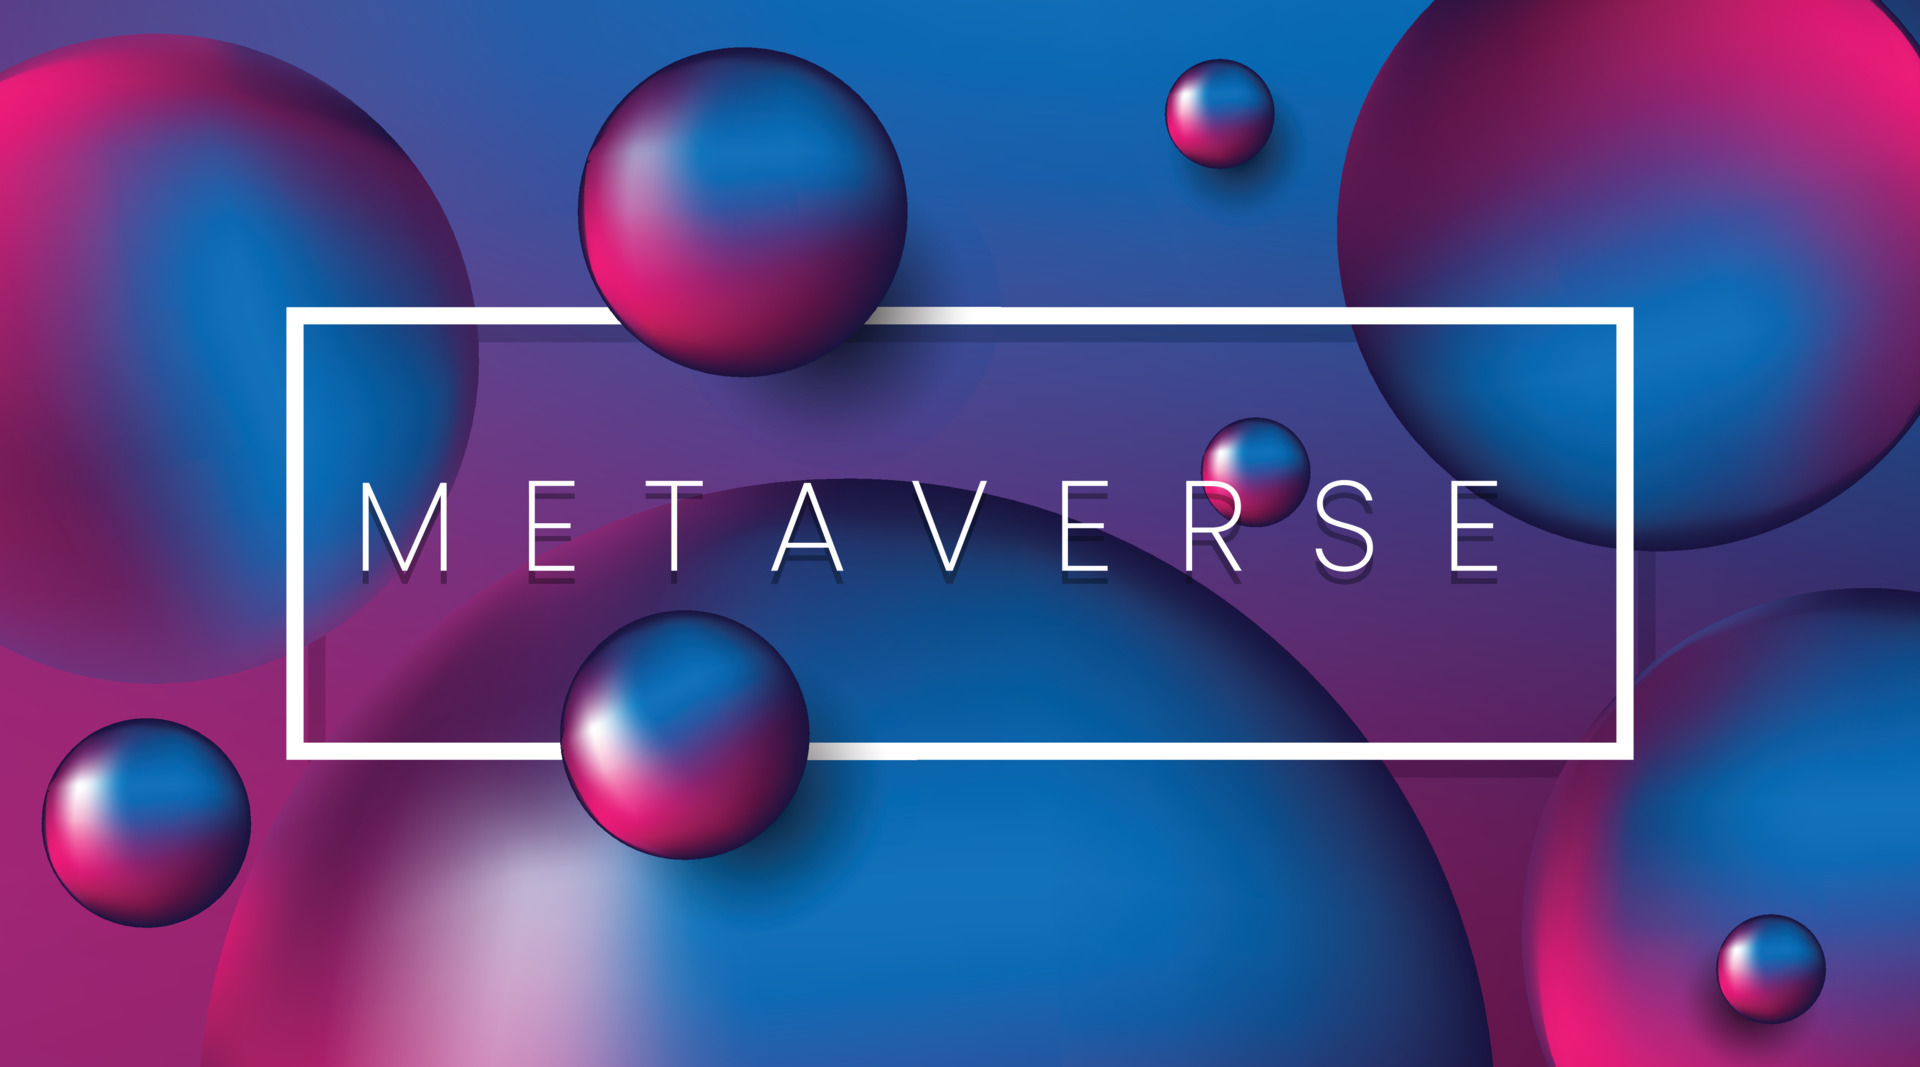 图片展示了多个漂浮的彩色球体，背景为蓝紫色渐变，中间有“METAVERSE”字样的白色矩形框。